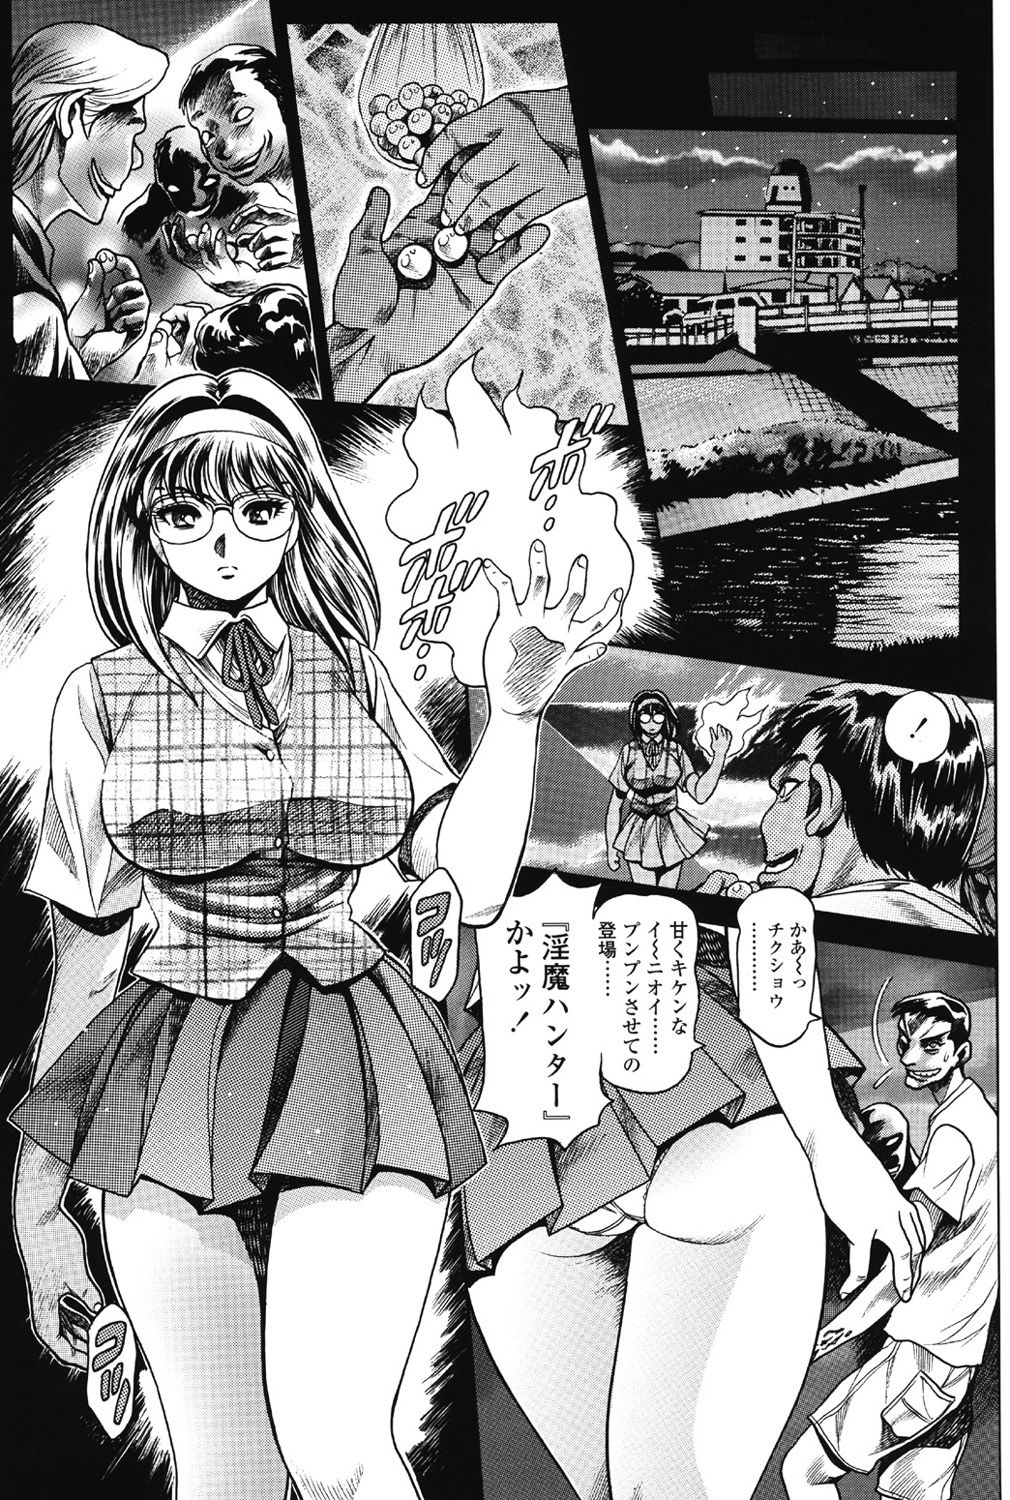 [Chataro] Nami SOS! 5 Previous Story Girls Another Days Keiko - 001 0